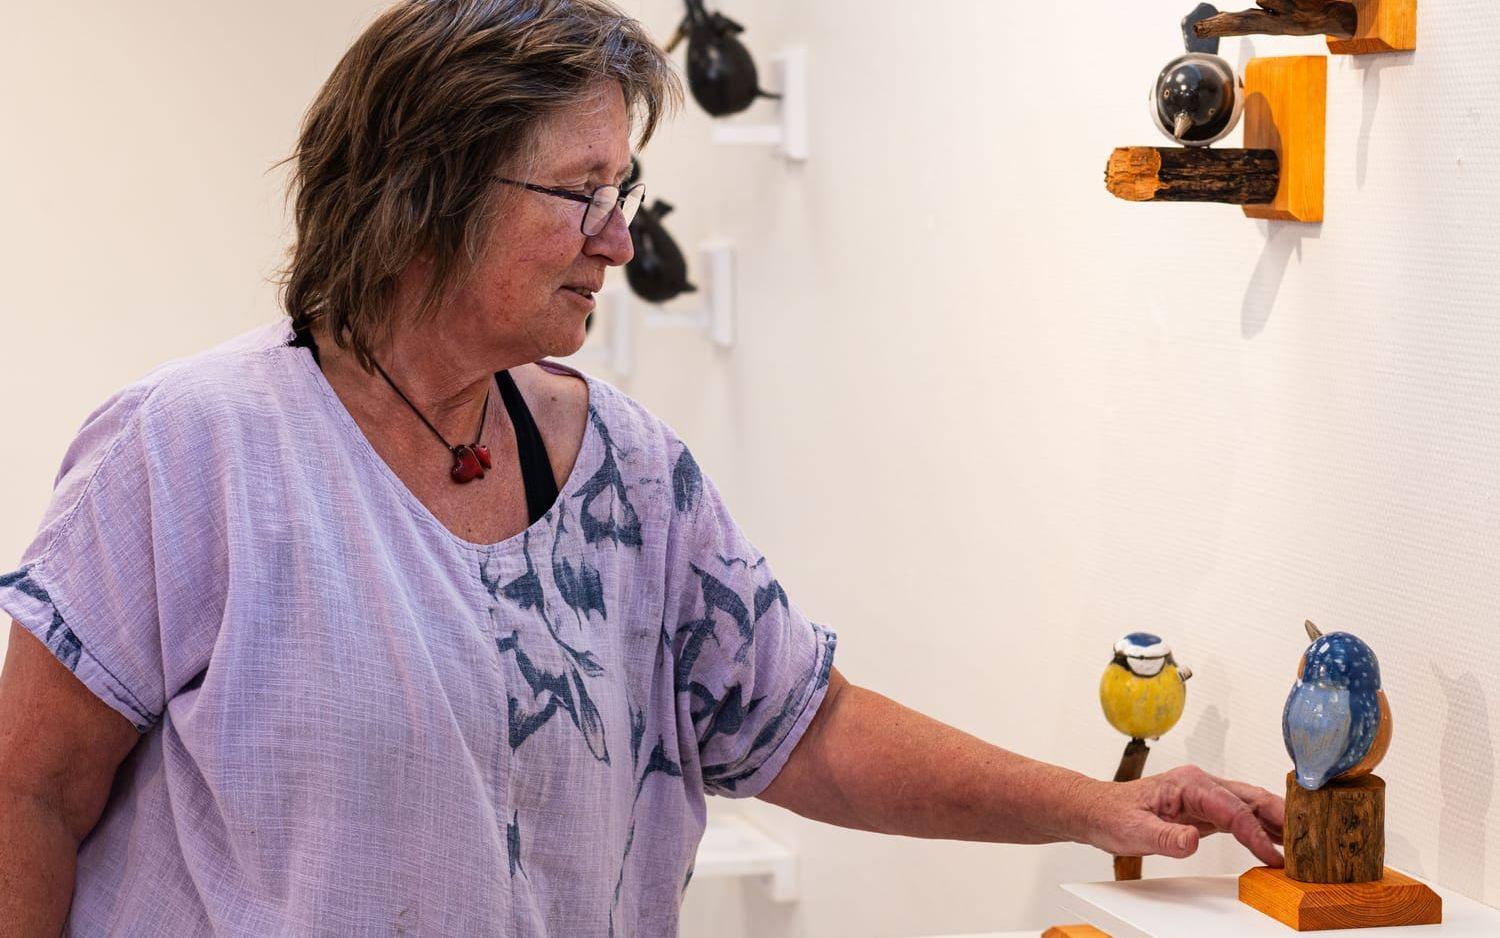 ”Det finns alltid en ny fågel att skulptera”, säger Sanna Nilsson om sin konst, som nu visas på biblioteket.